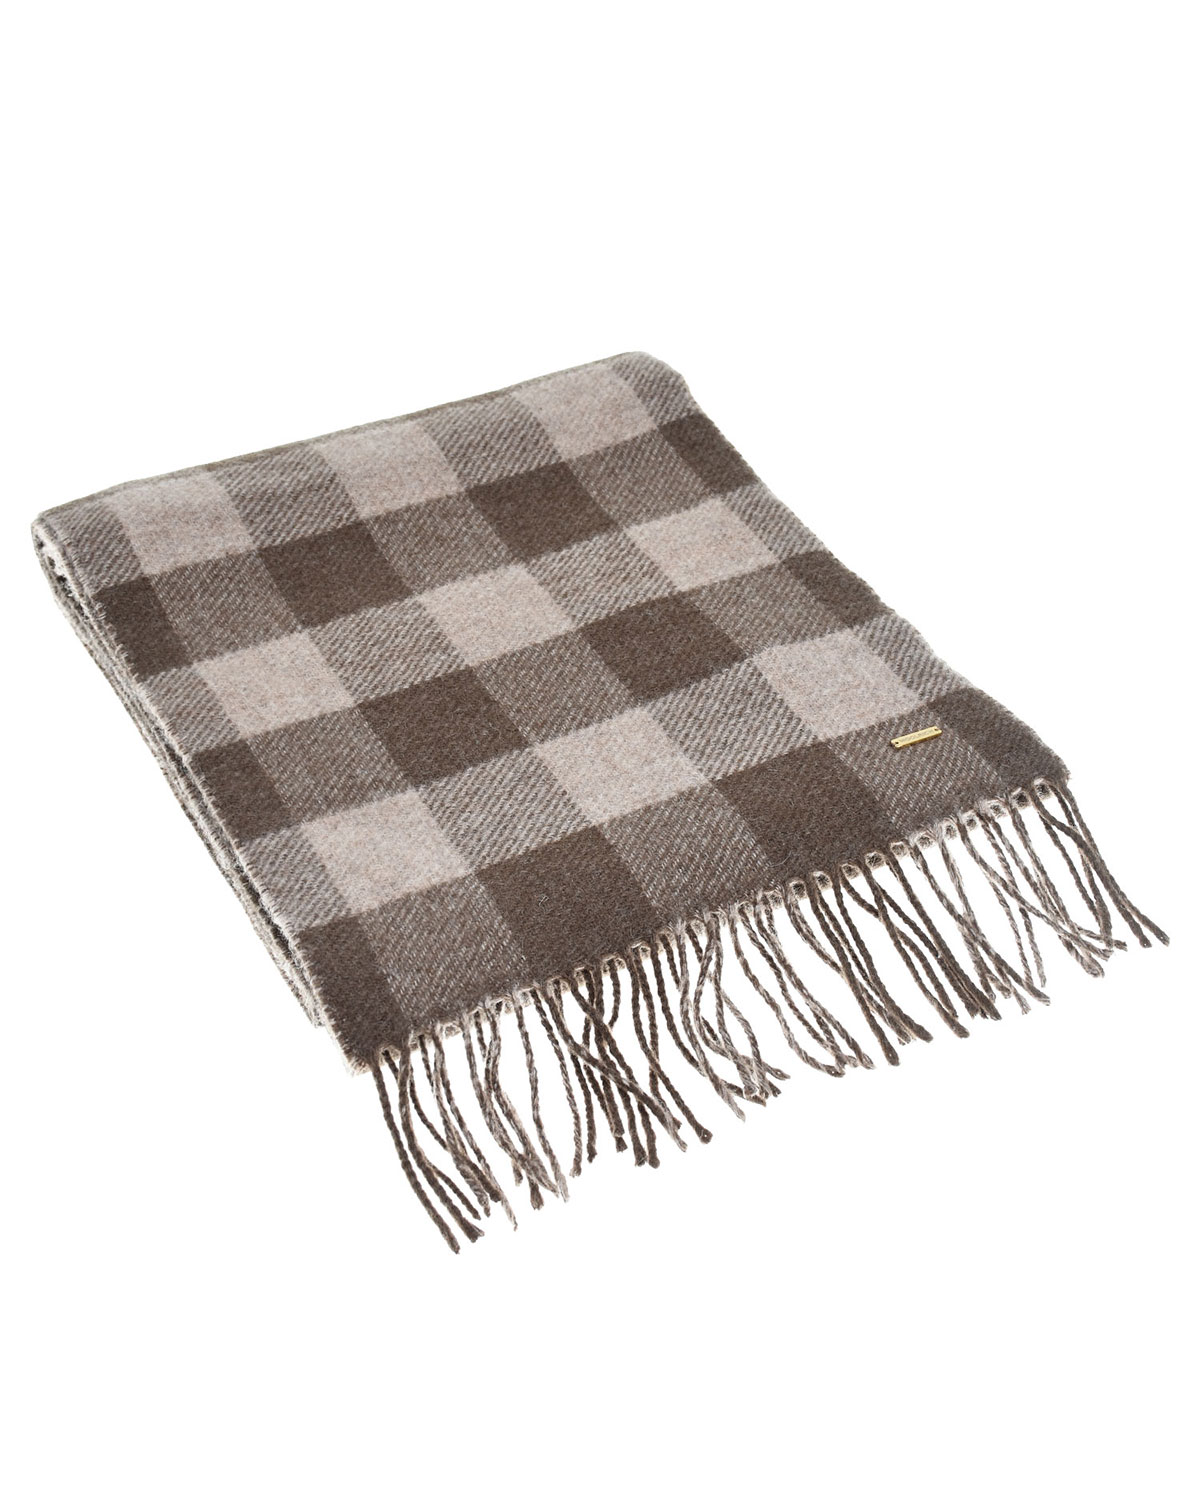 Клетчатый шарф с бахромой, 120x30 см Woolrich, размер unica, цвет коричневый